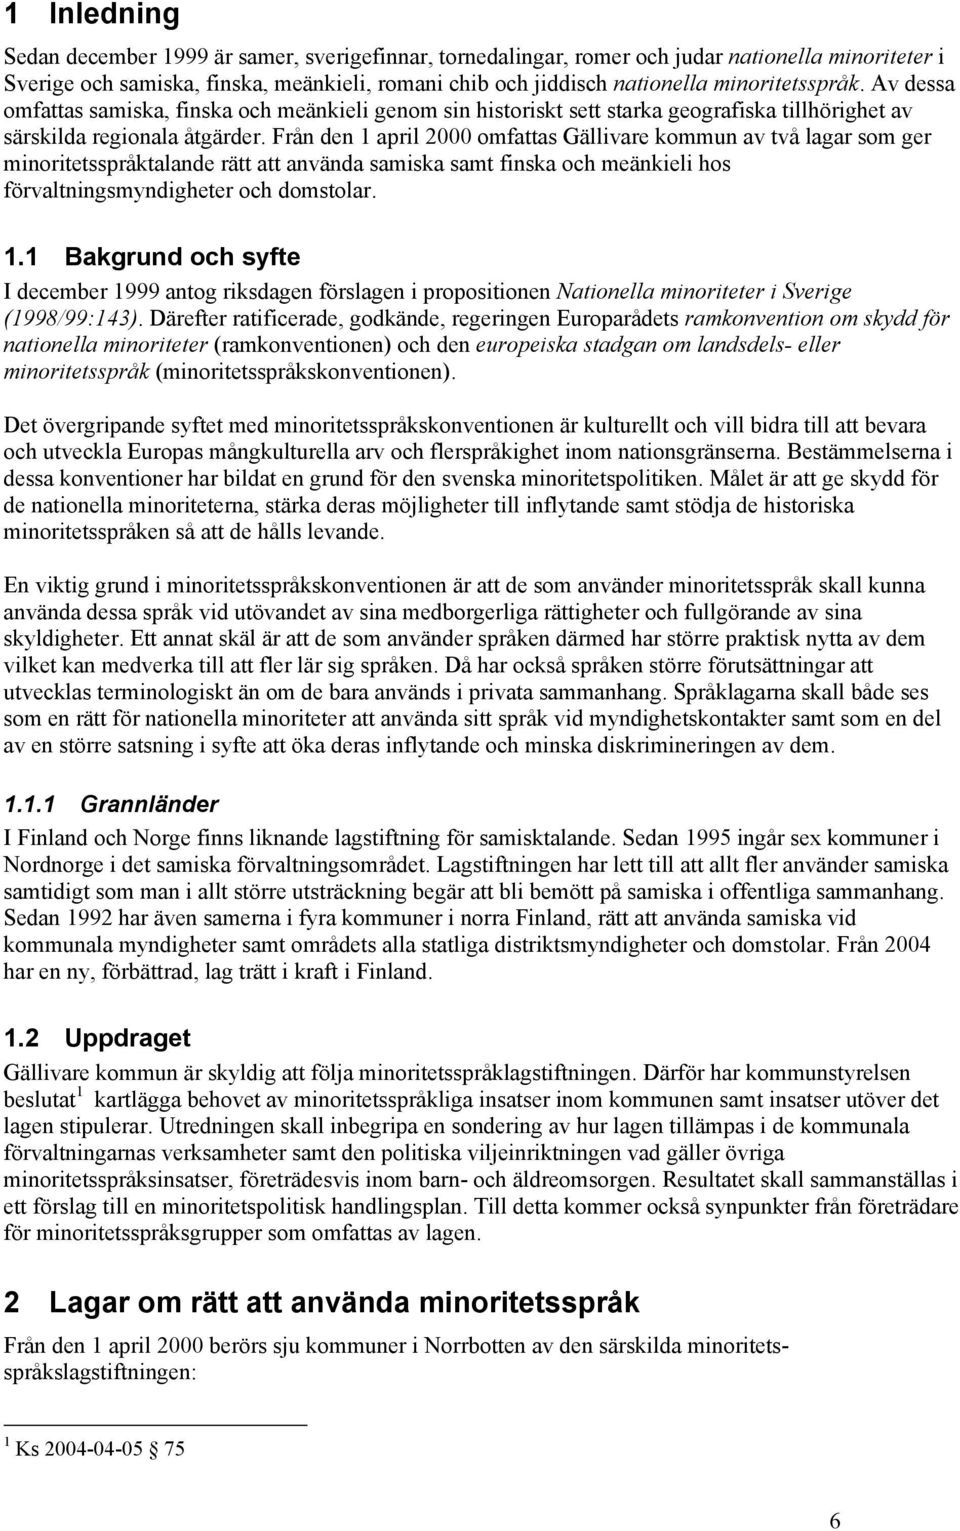 Från den 1 april 2000 omfattas Gällivare kommun av två lagar som ger minoritetsspråktalande rätt att använda samiska samt finska och meänkieli hos förvaltningsmyndigheter och domstolar. 1.1 Bakgrund och syfte I december 1999 antog riksdagen förslagen i propositionen Nationella minoriteter i Sverige (1998/99:143).